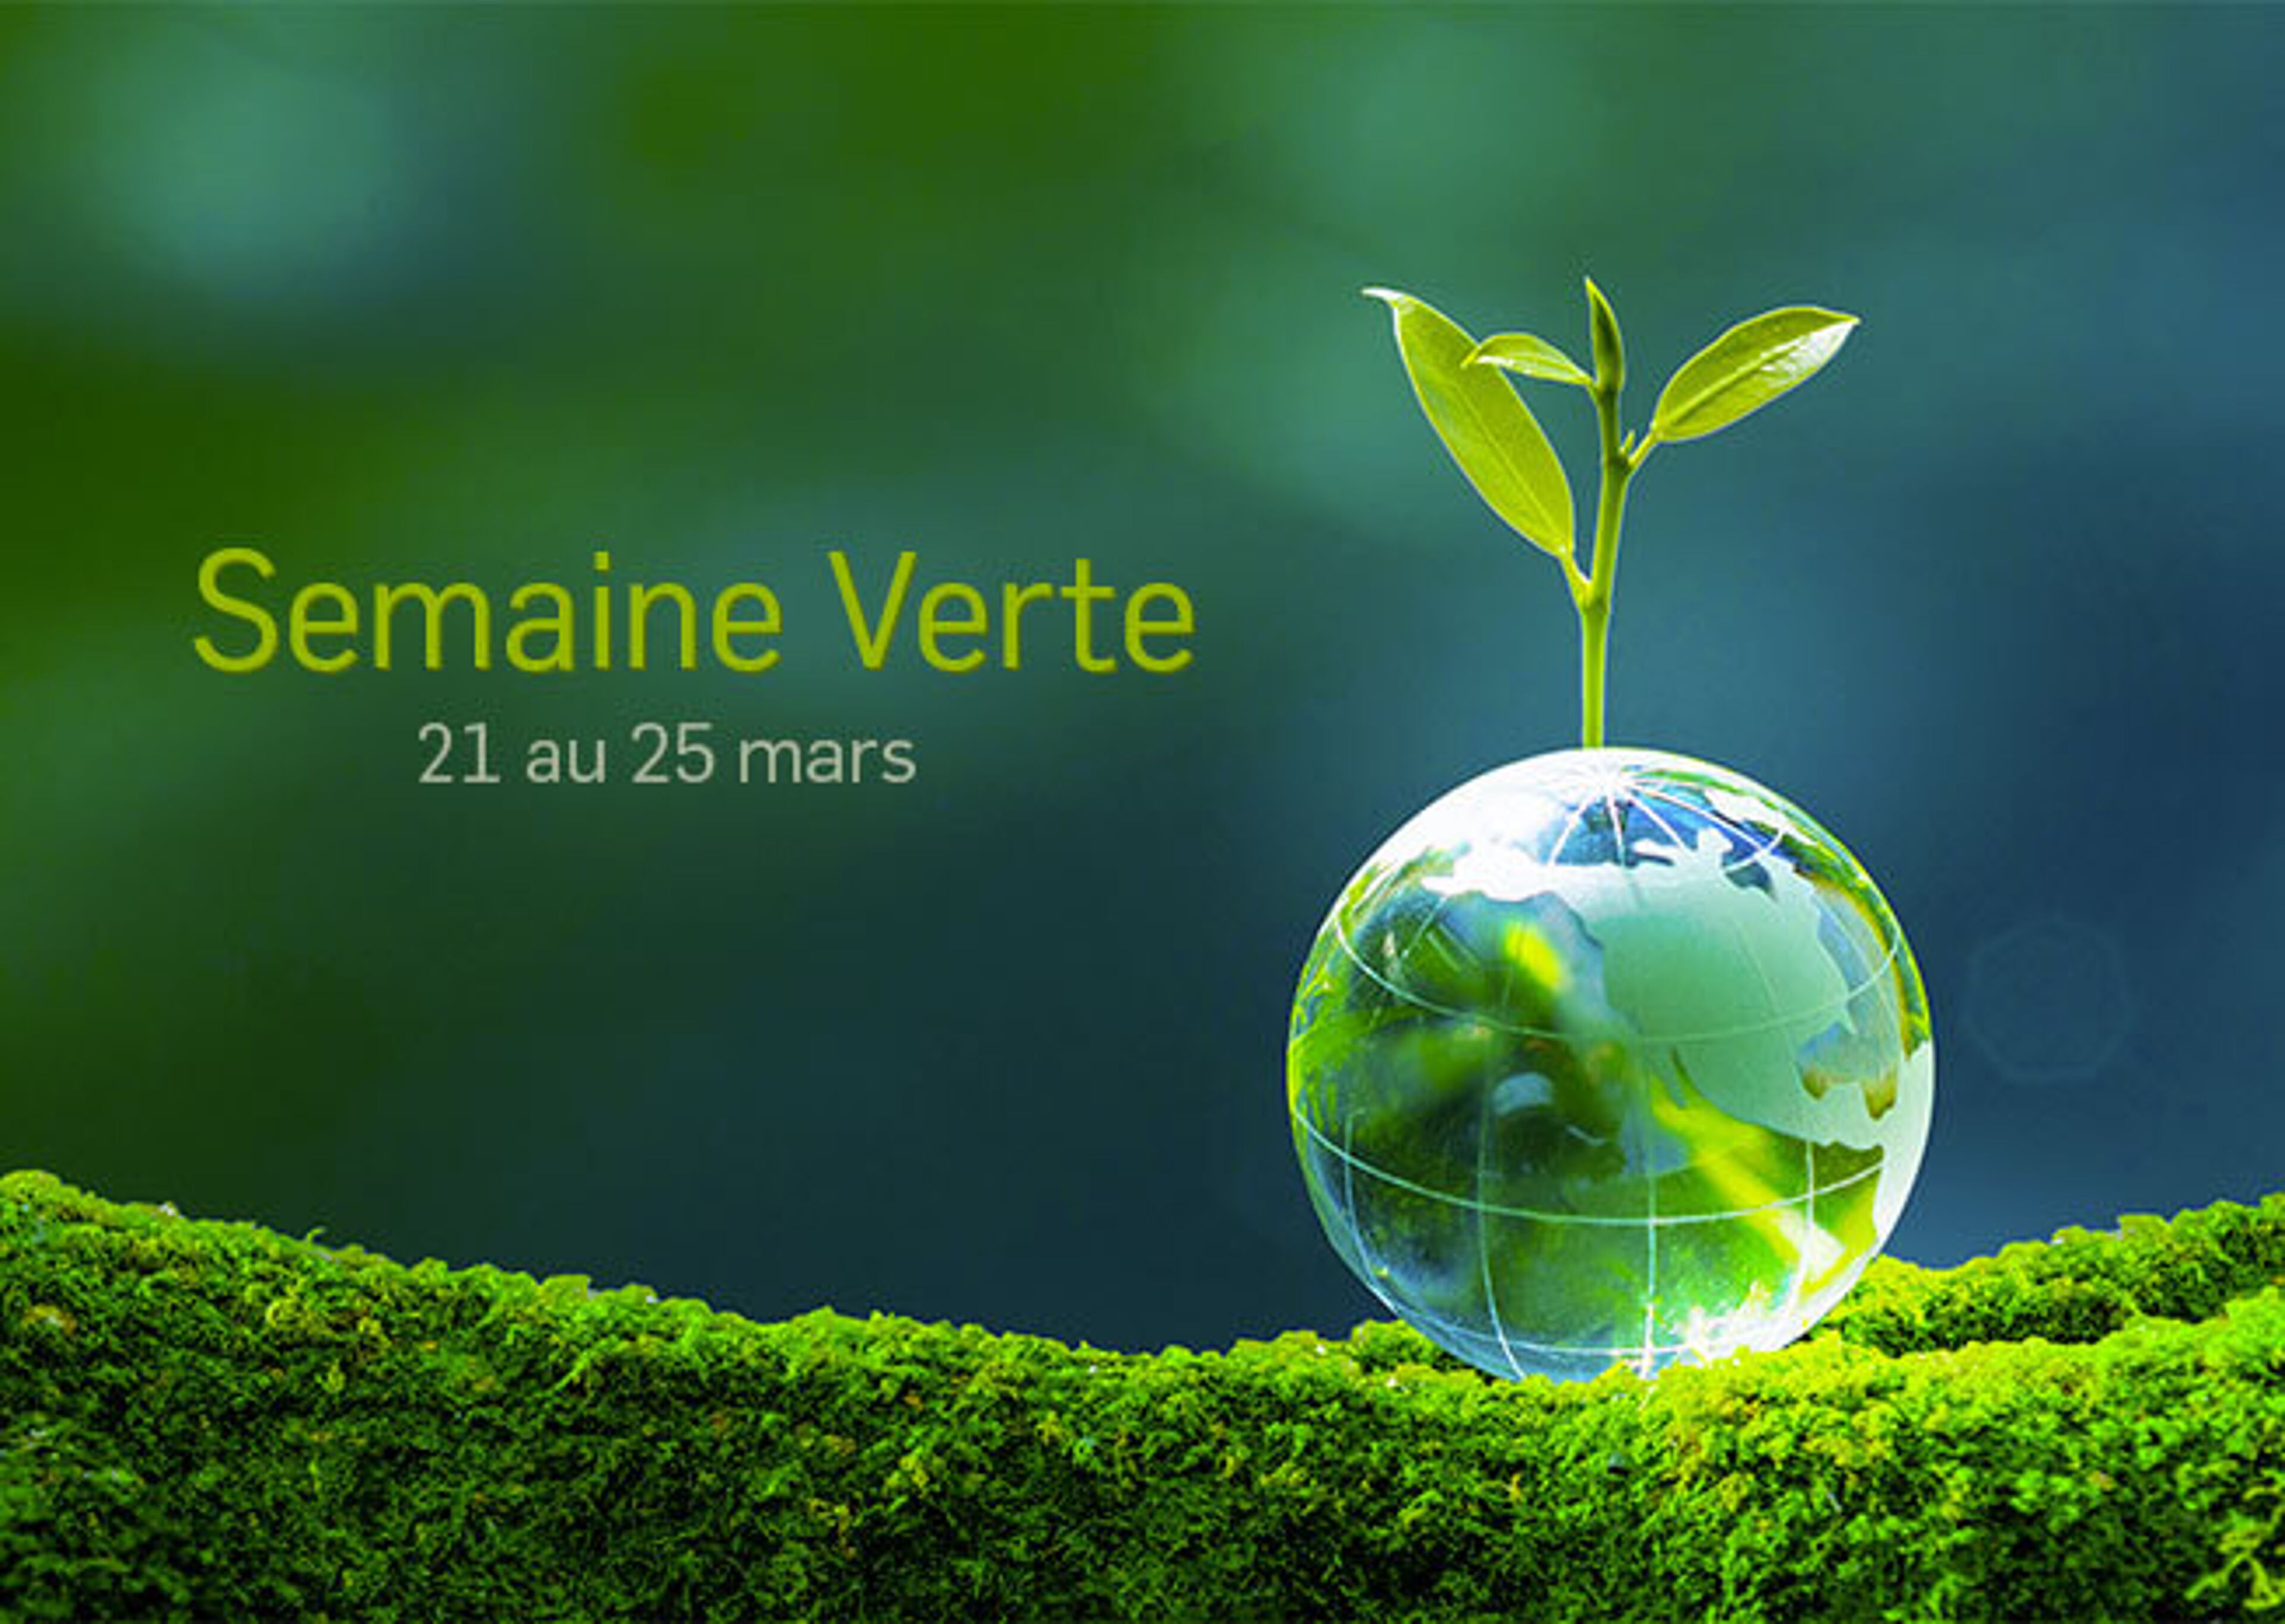 Affiche d'une jeune pousse émergeant d'un globe terrestre transparent sur de la mousse, symbolisant la durabilité, du 21 au 25 mars.